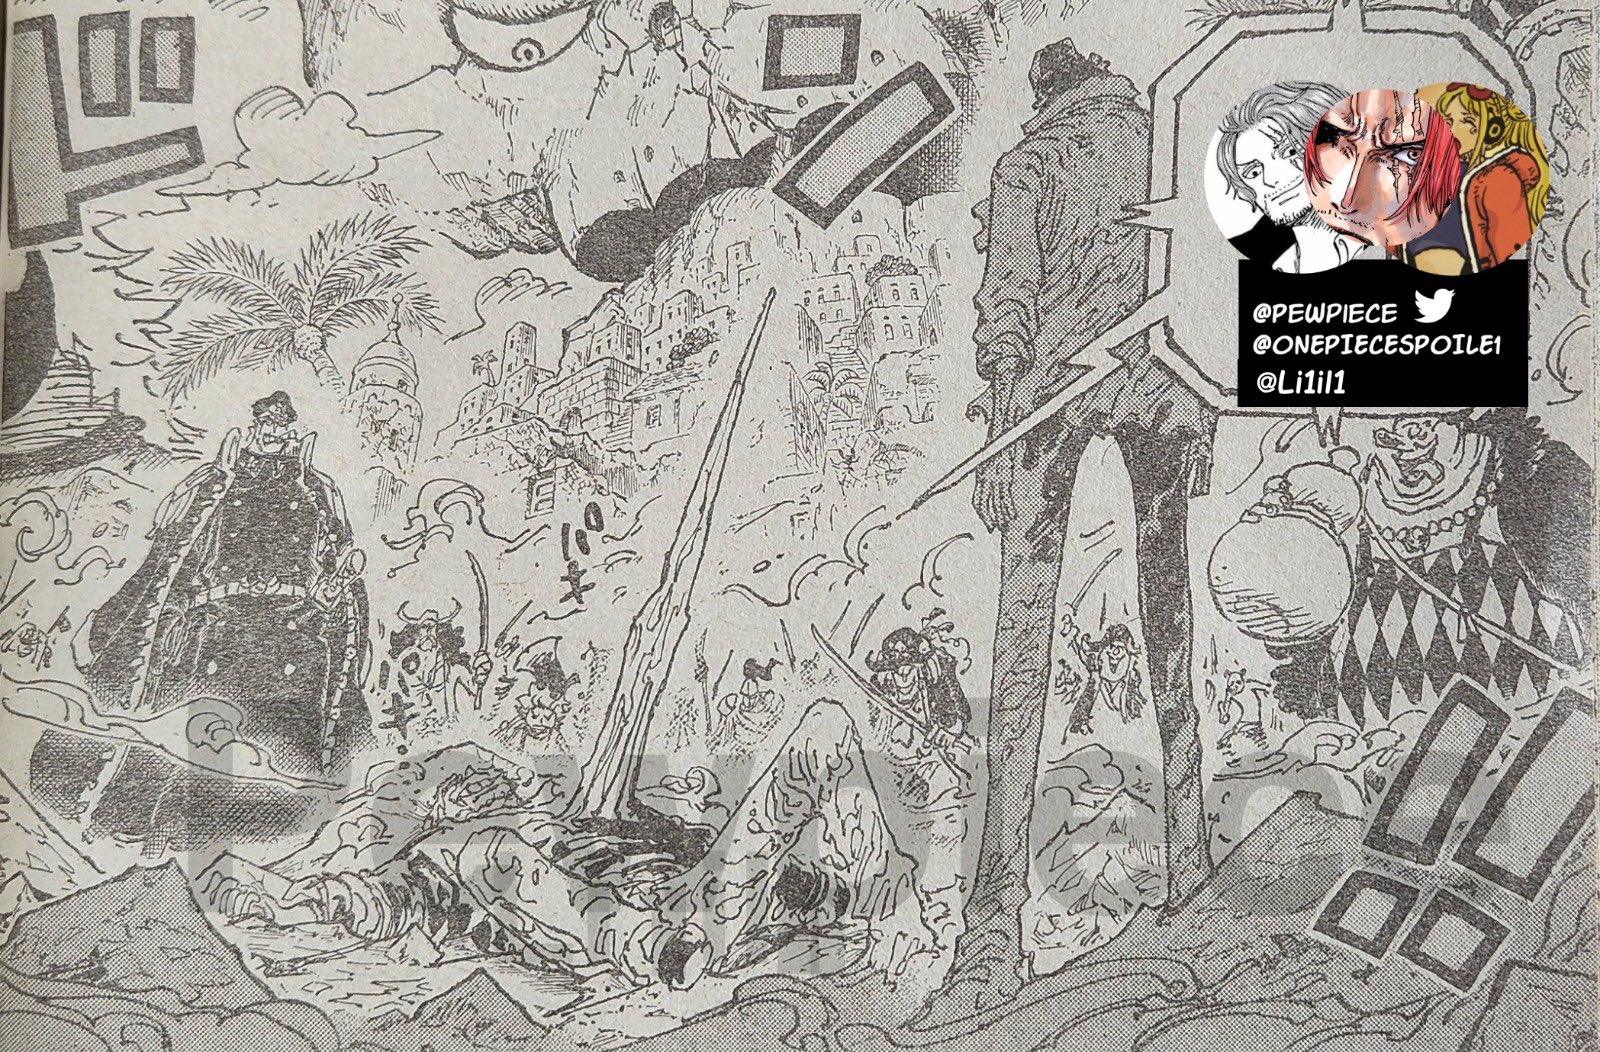 Spoiler] - 1088 Spoiler Metin ve Resimleri  One Piece Türkiye Fan Sayfası, One  Piece Türkçe Manga, One Piece Bölümler, One Piece Film